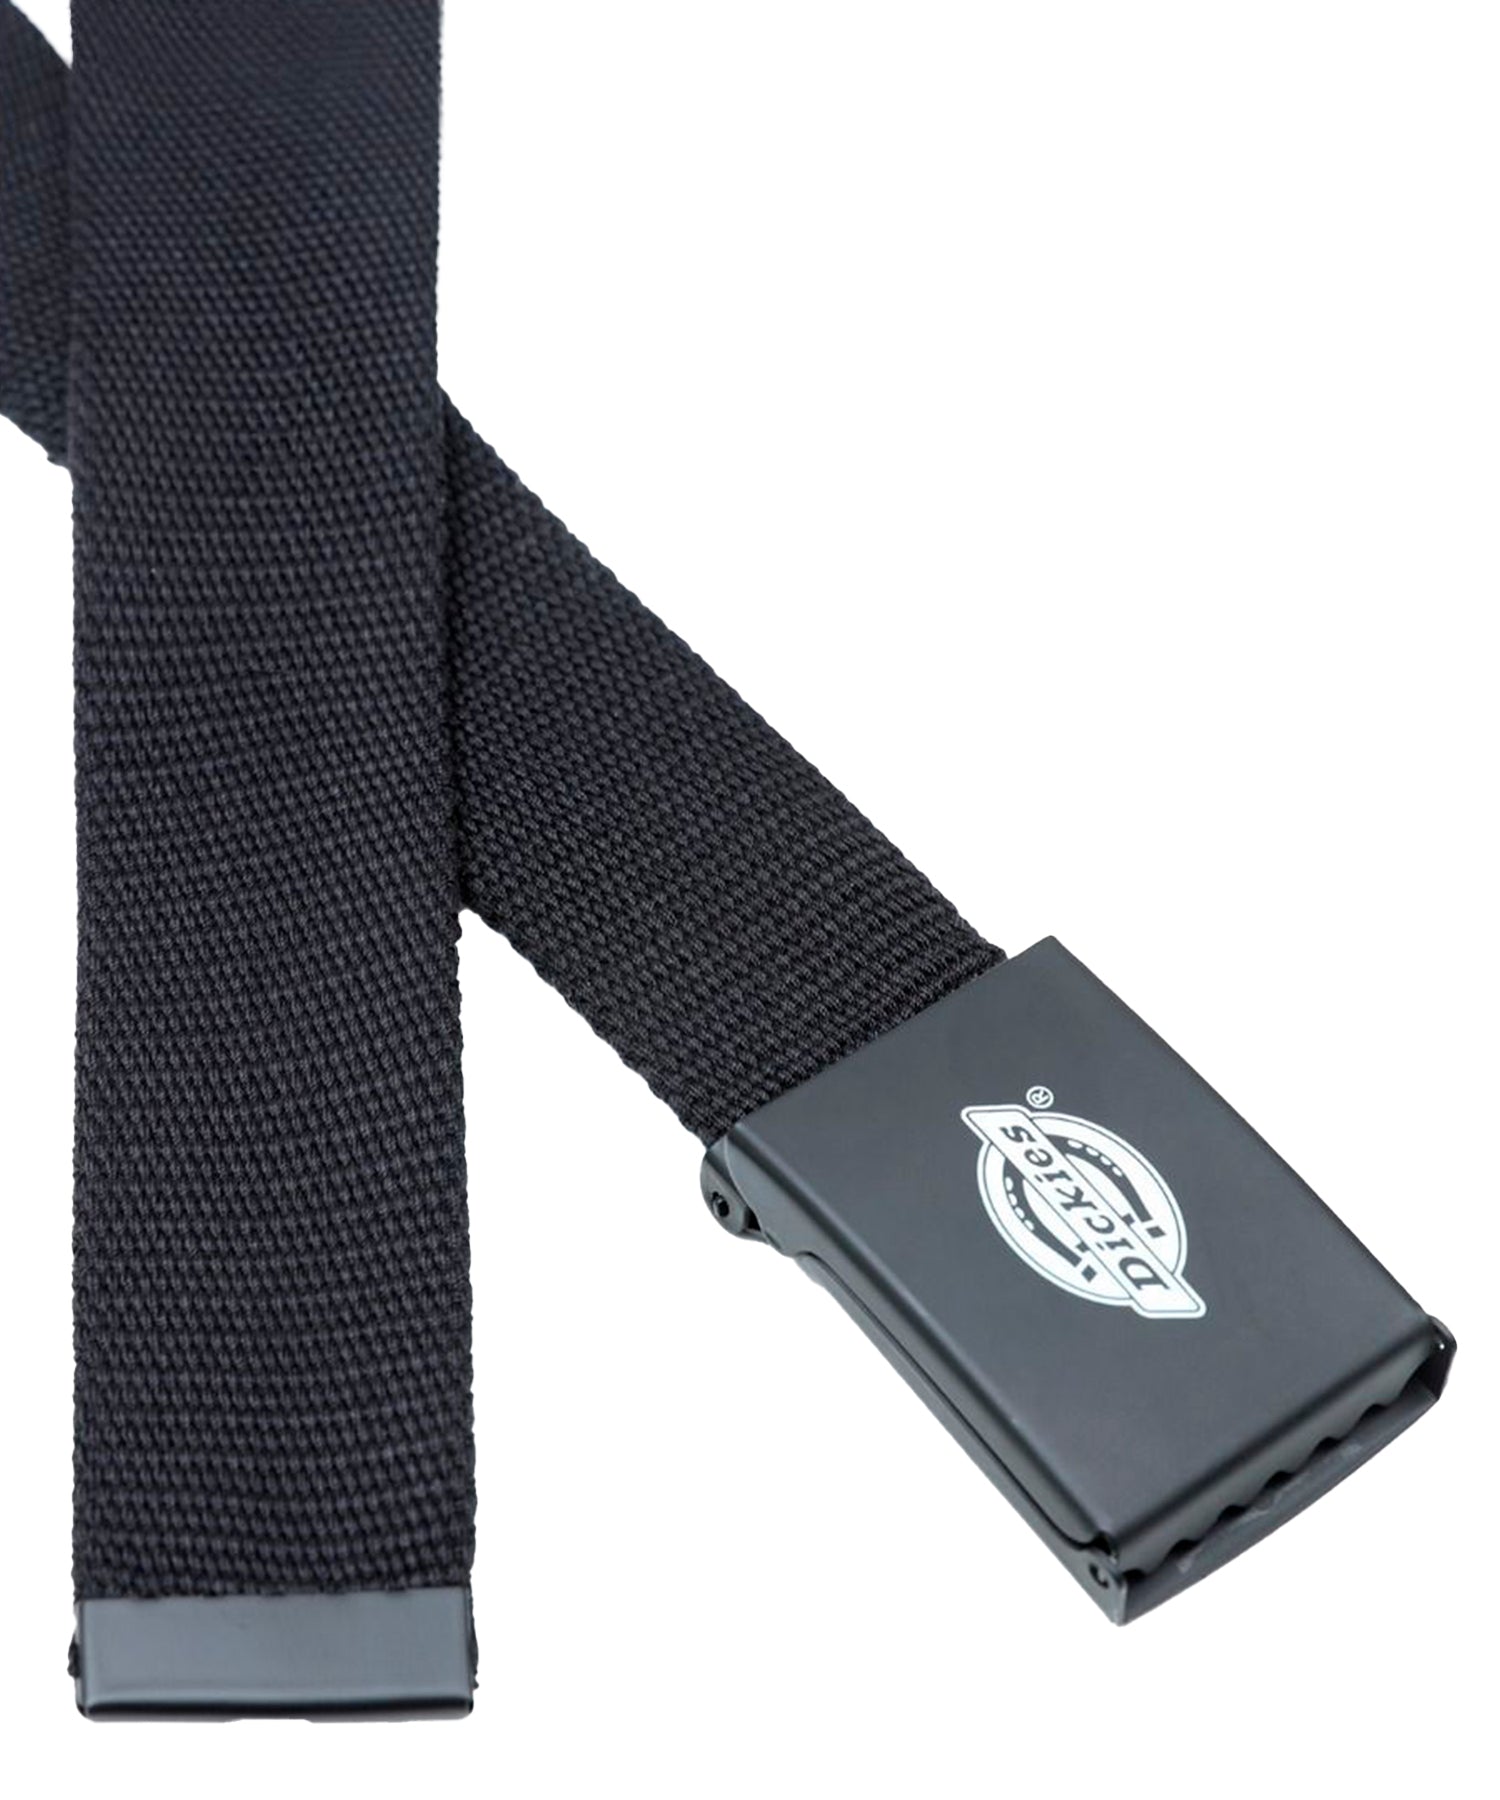 dickies cinturón loneta de color negro y hebilla metálica con logo de dickies